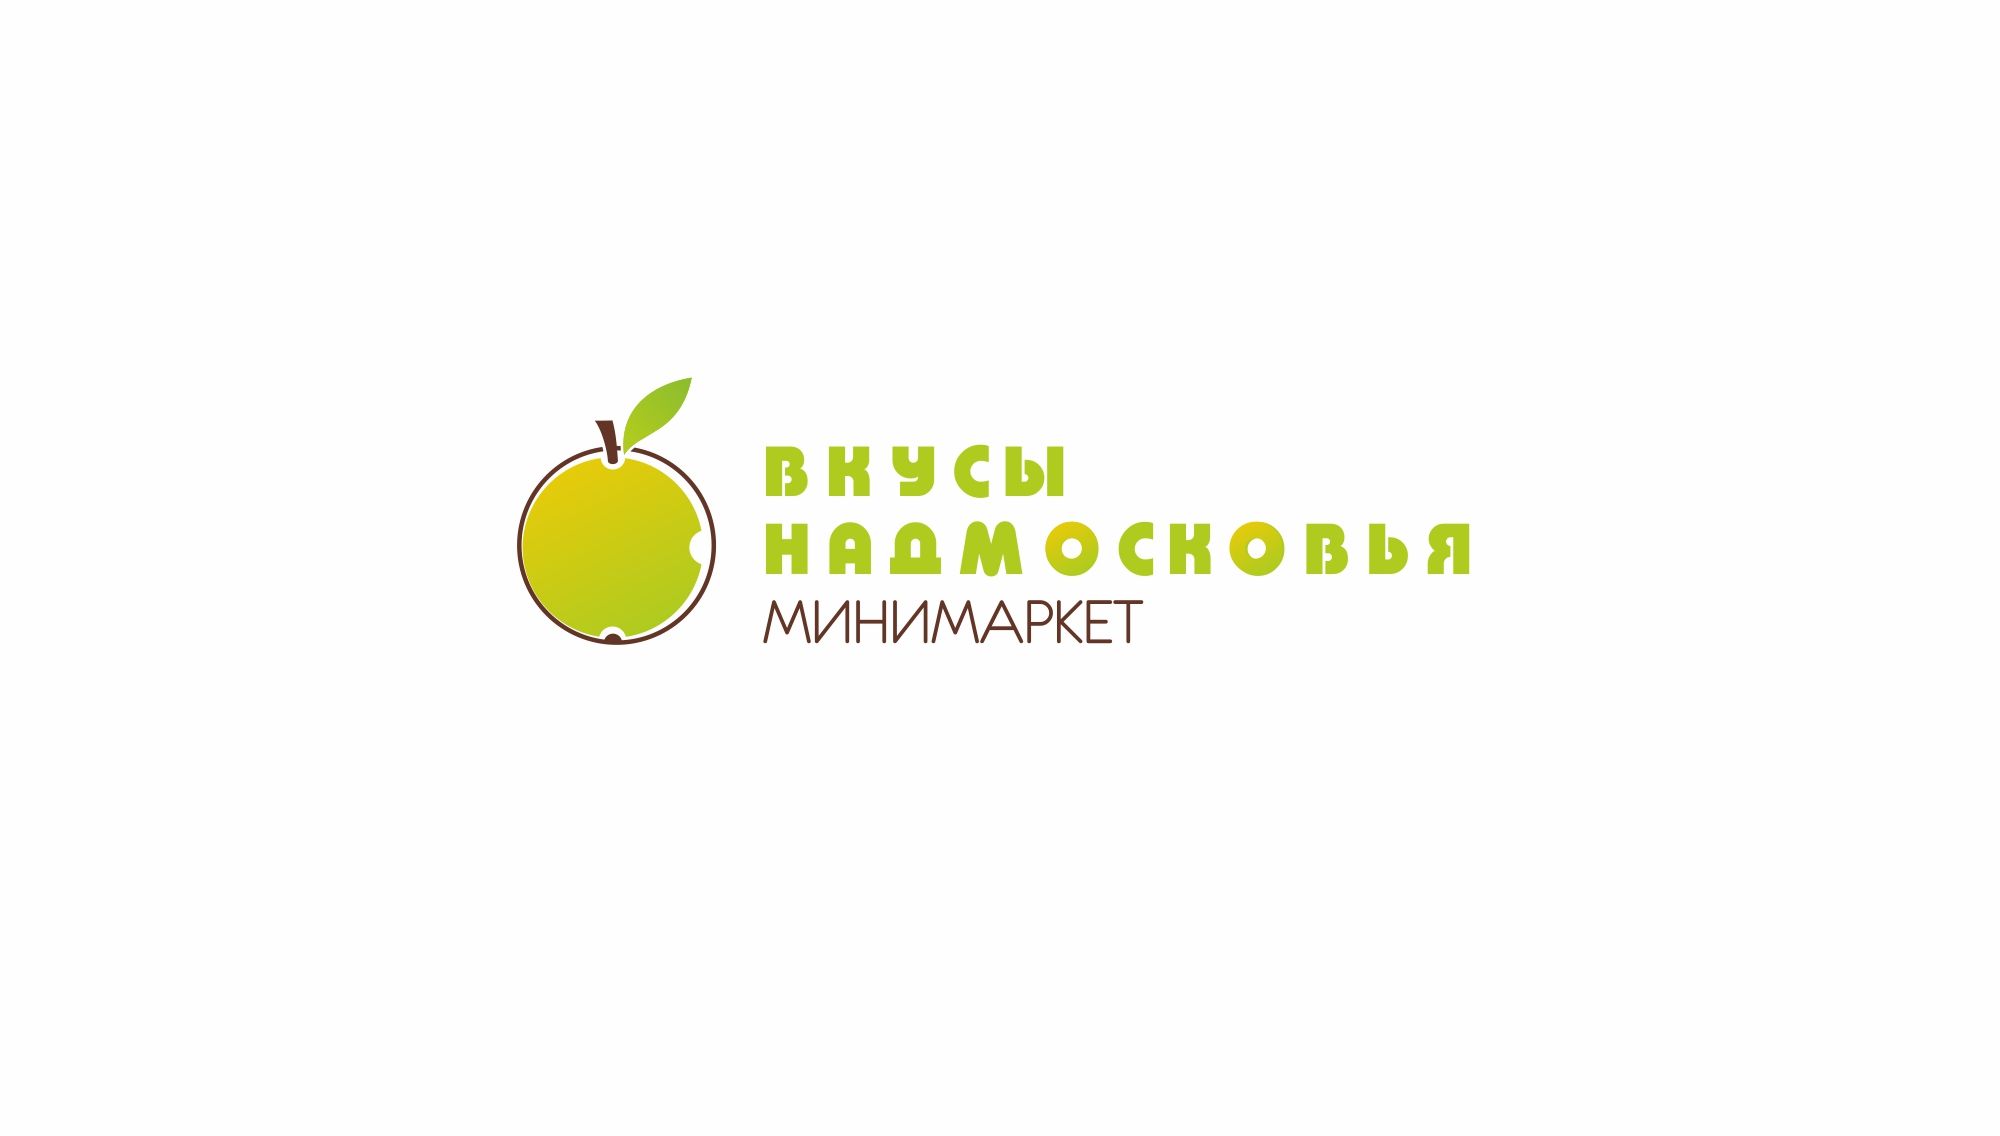 Лого и фирменный стиль для Вкусы Надмосковья - дизайнер markosov